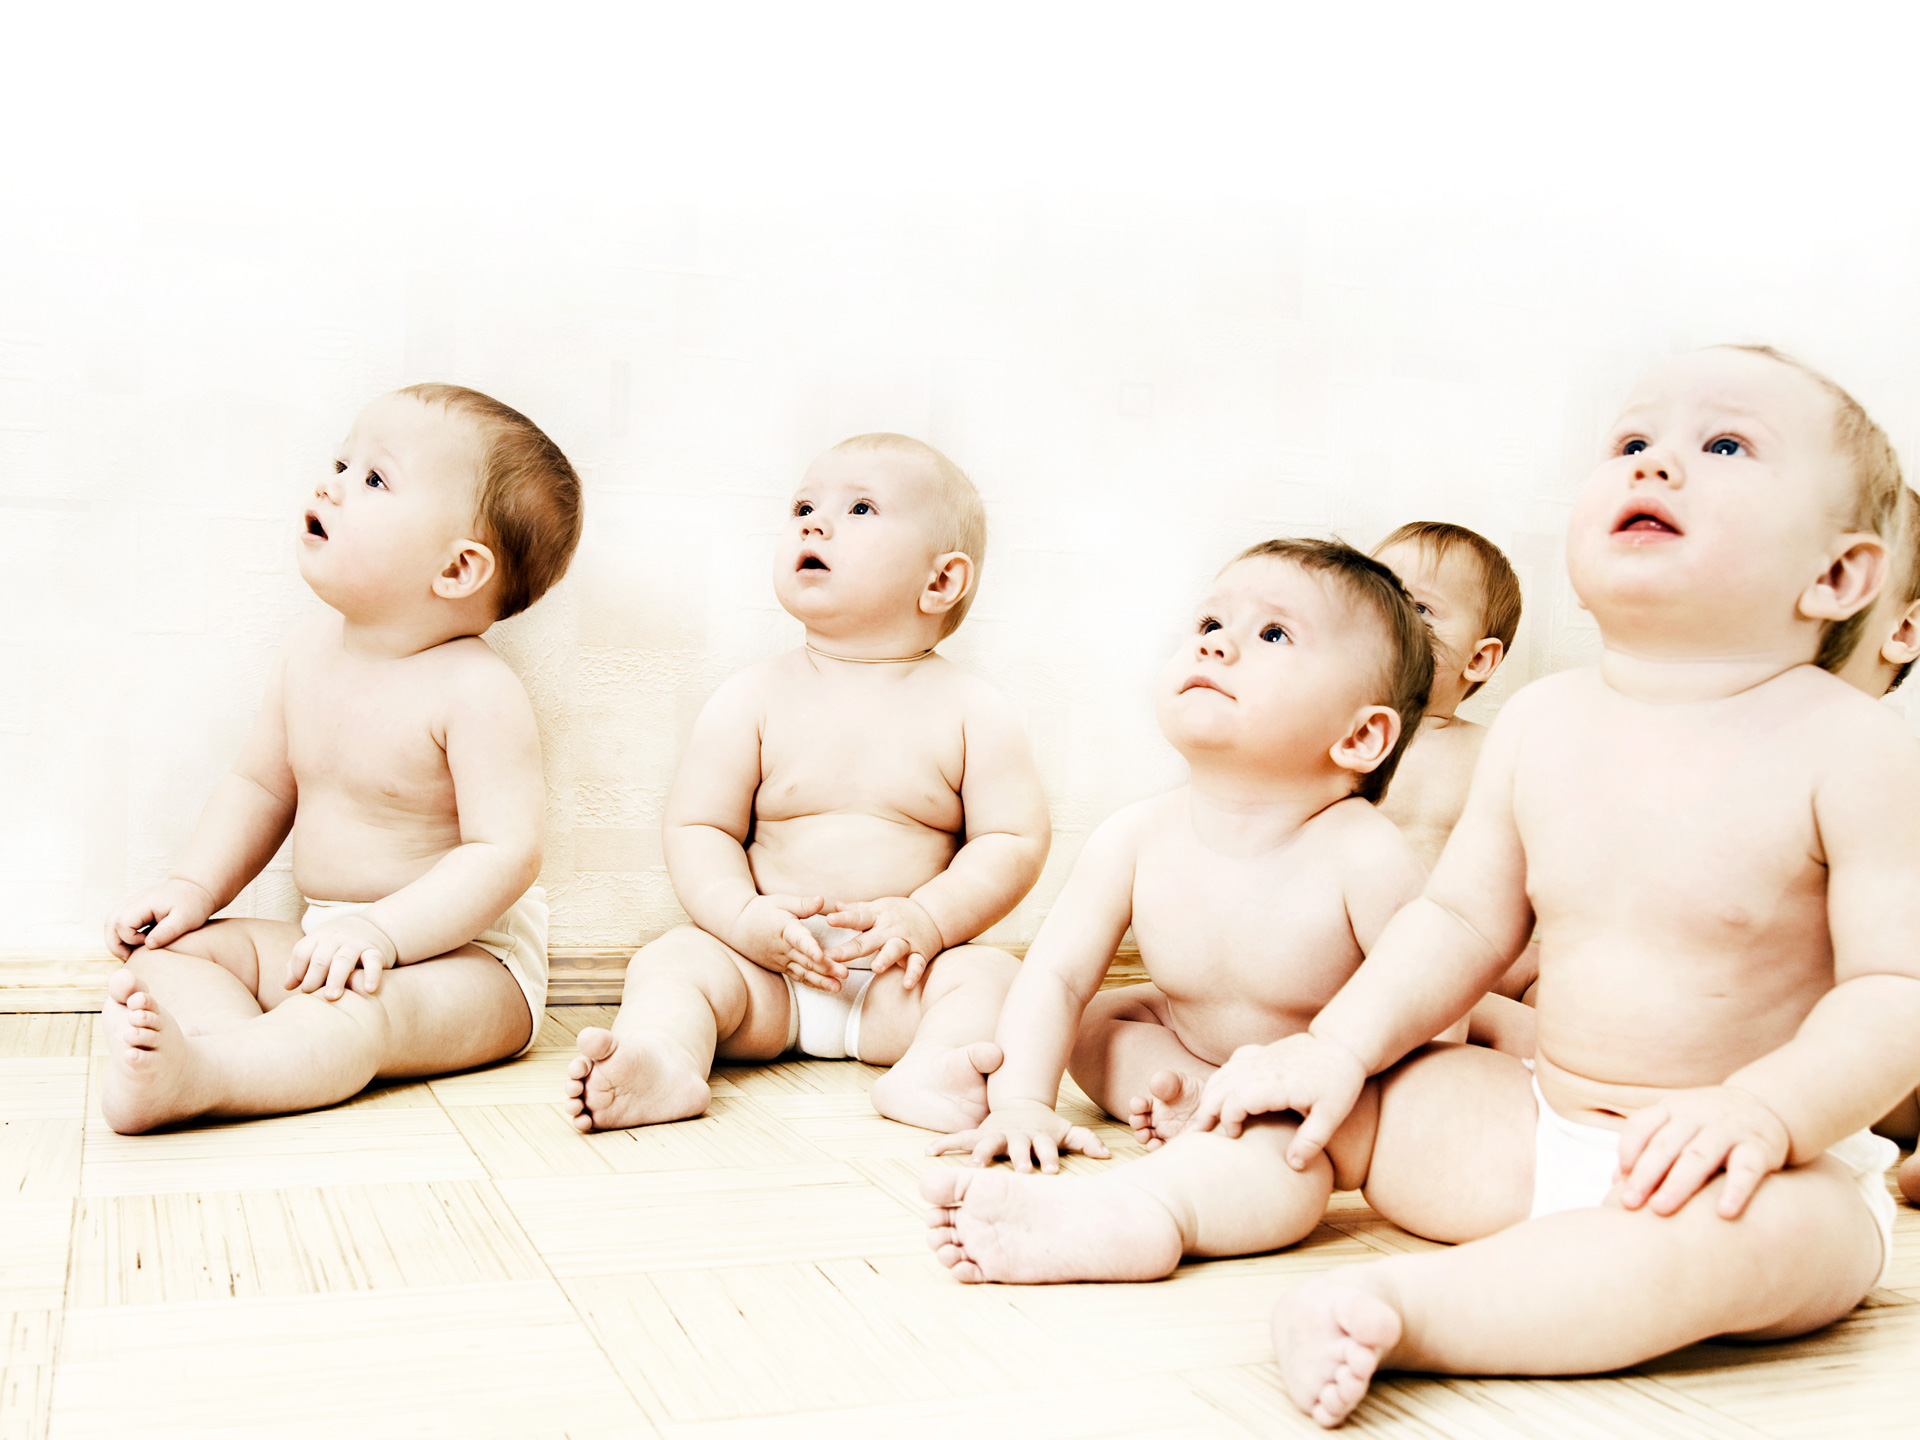 Cute Babies Sitting742607911 - Cute Babies Sitting - Sitting, Cute, Baby, Babies